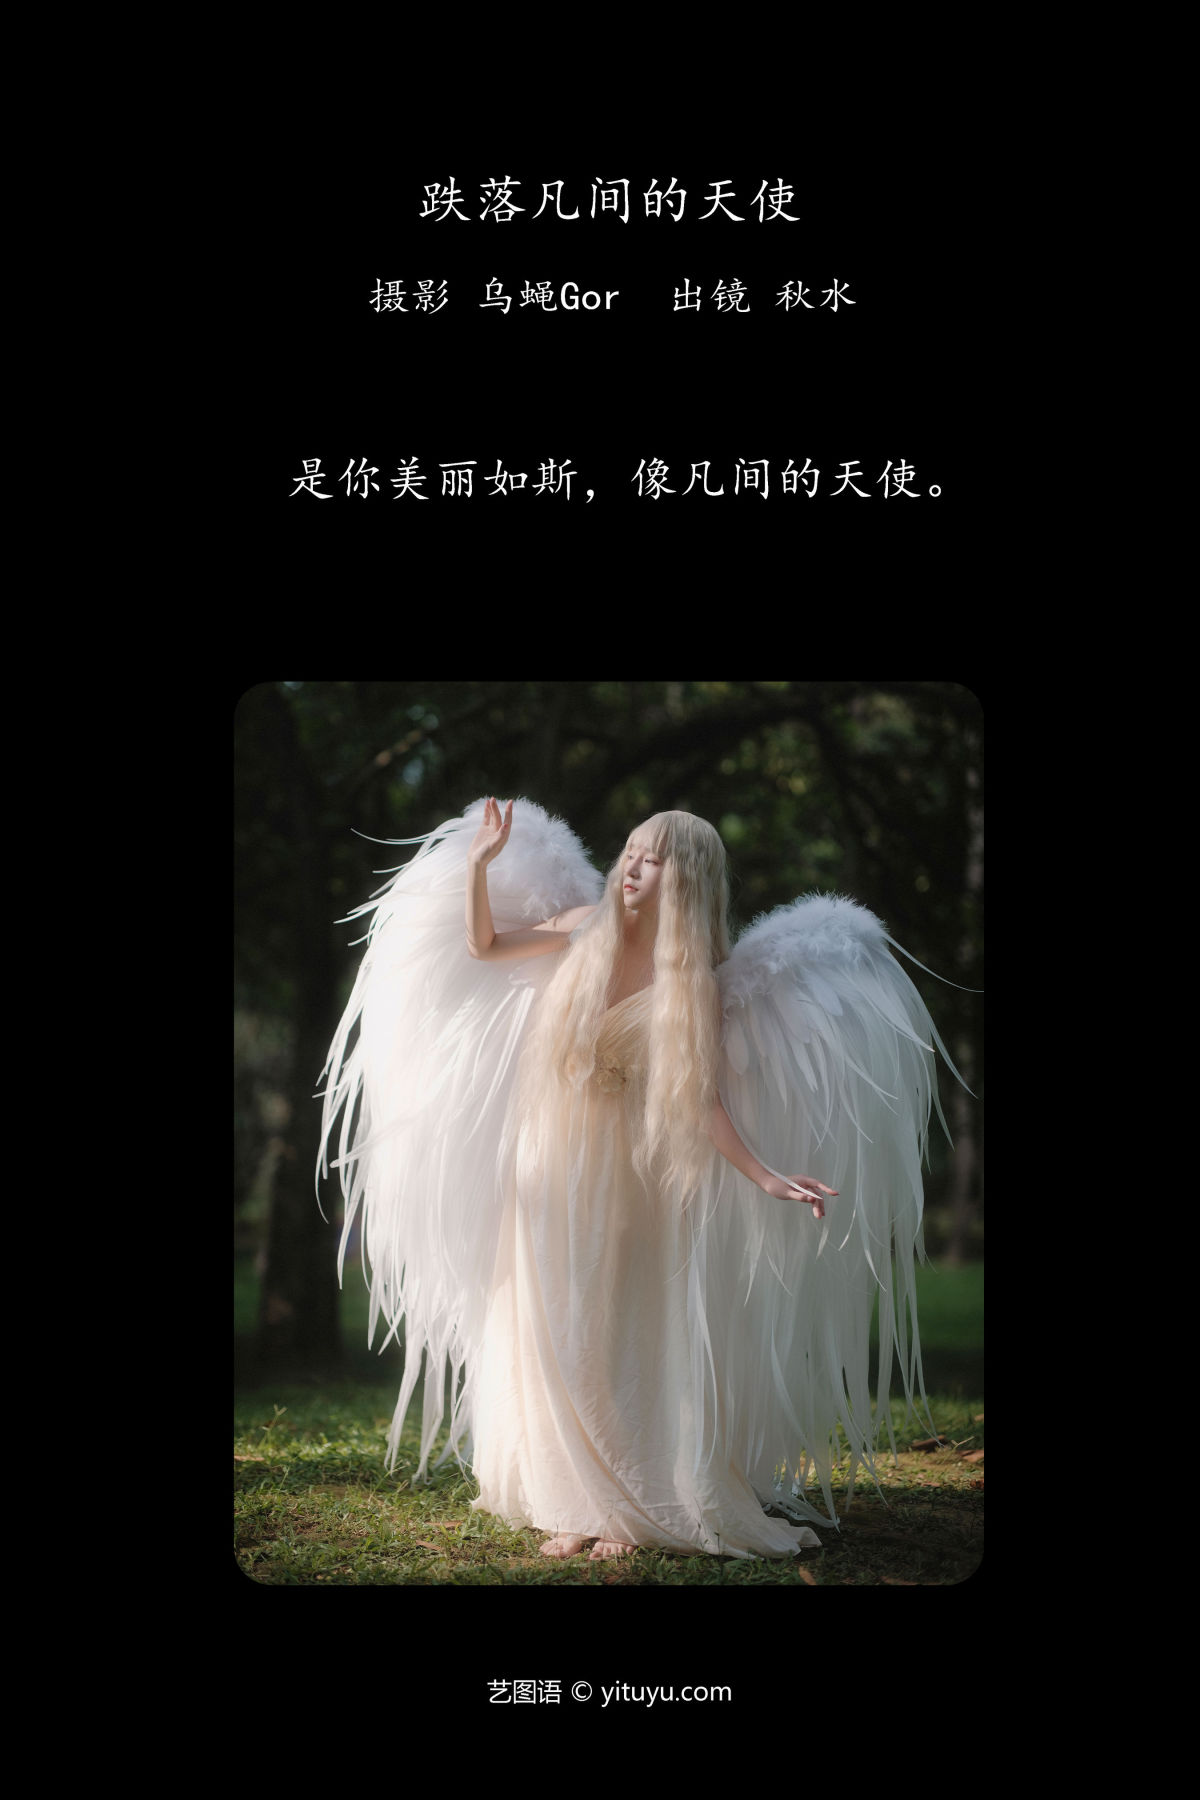 乌蝇Gor_琳琅《跌落凡间的天使》美图作品图片2